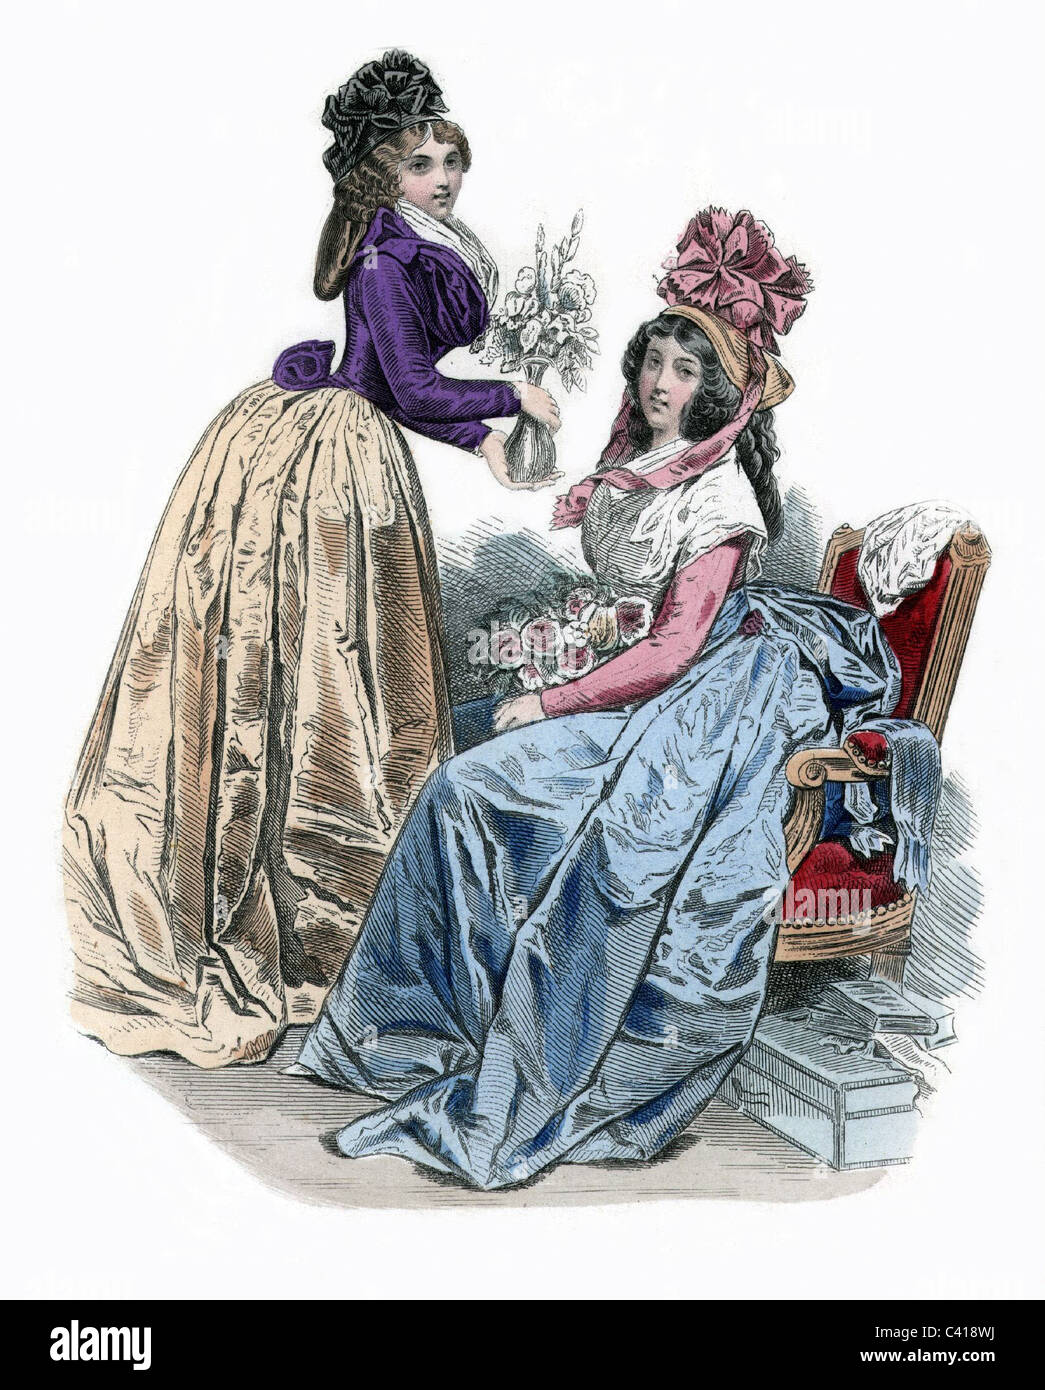 Mode, mode de la ladie, 18ème siècle, France, Paris, 1790, droits additionnels-Clearences-non disponible Banque D'Images